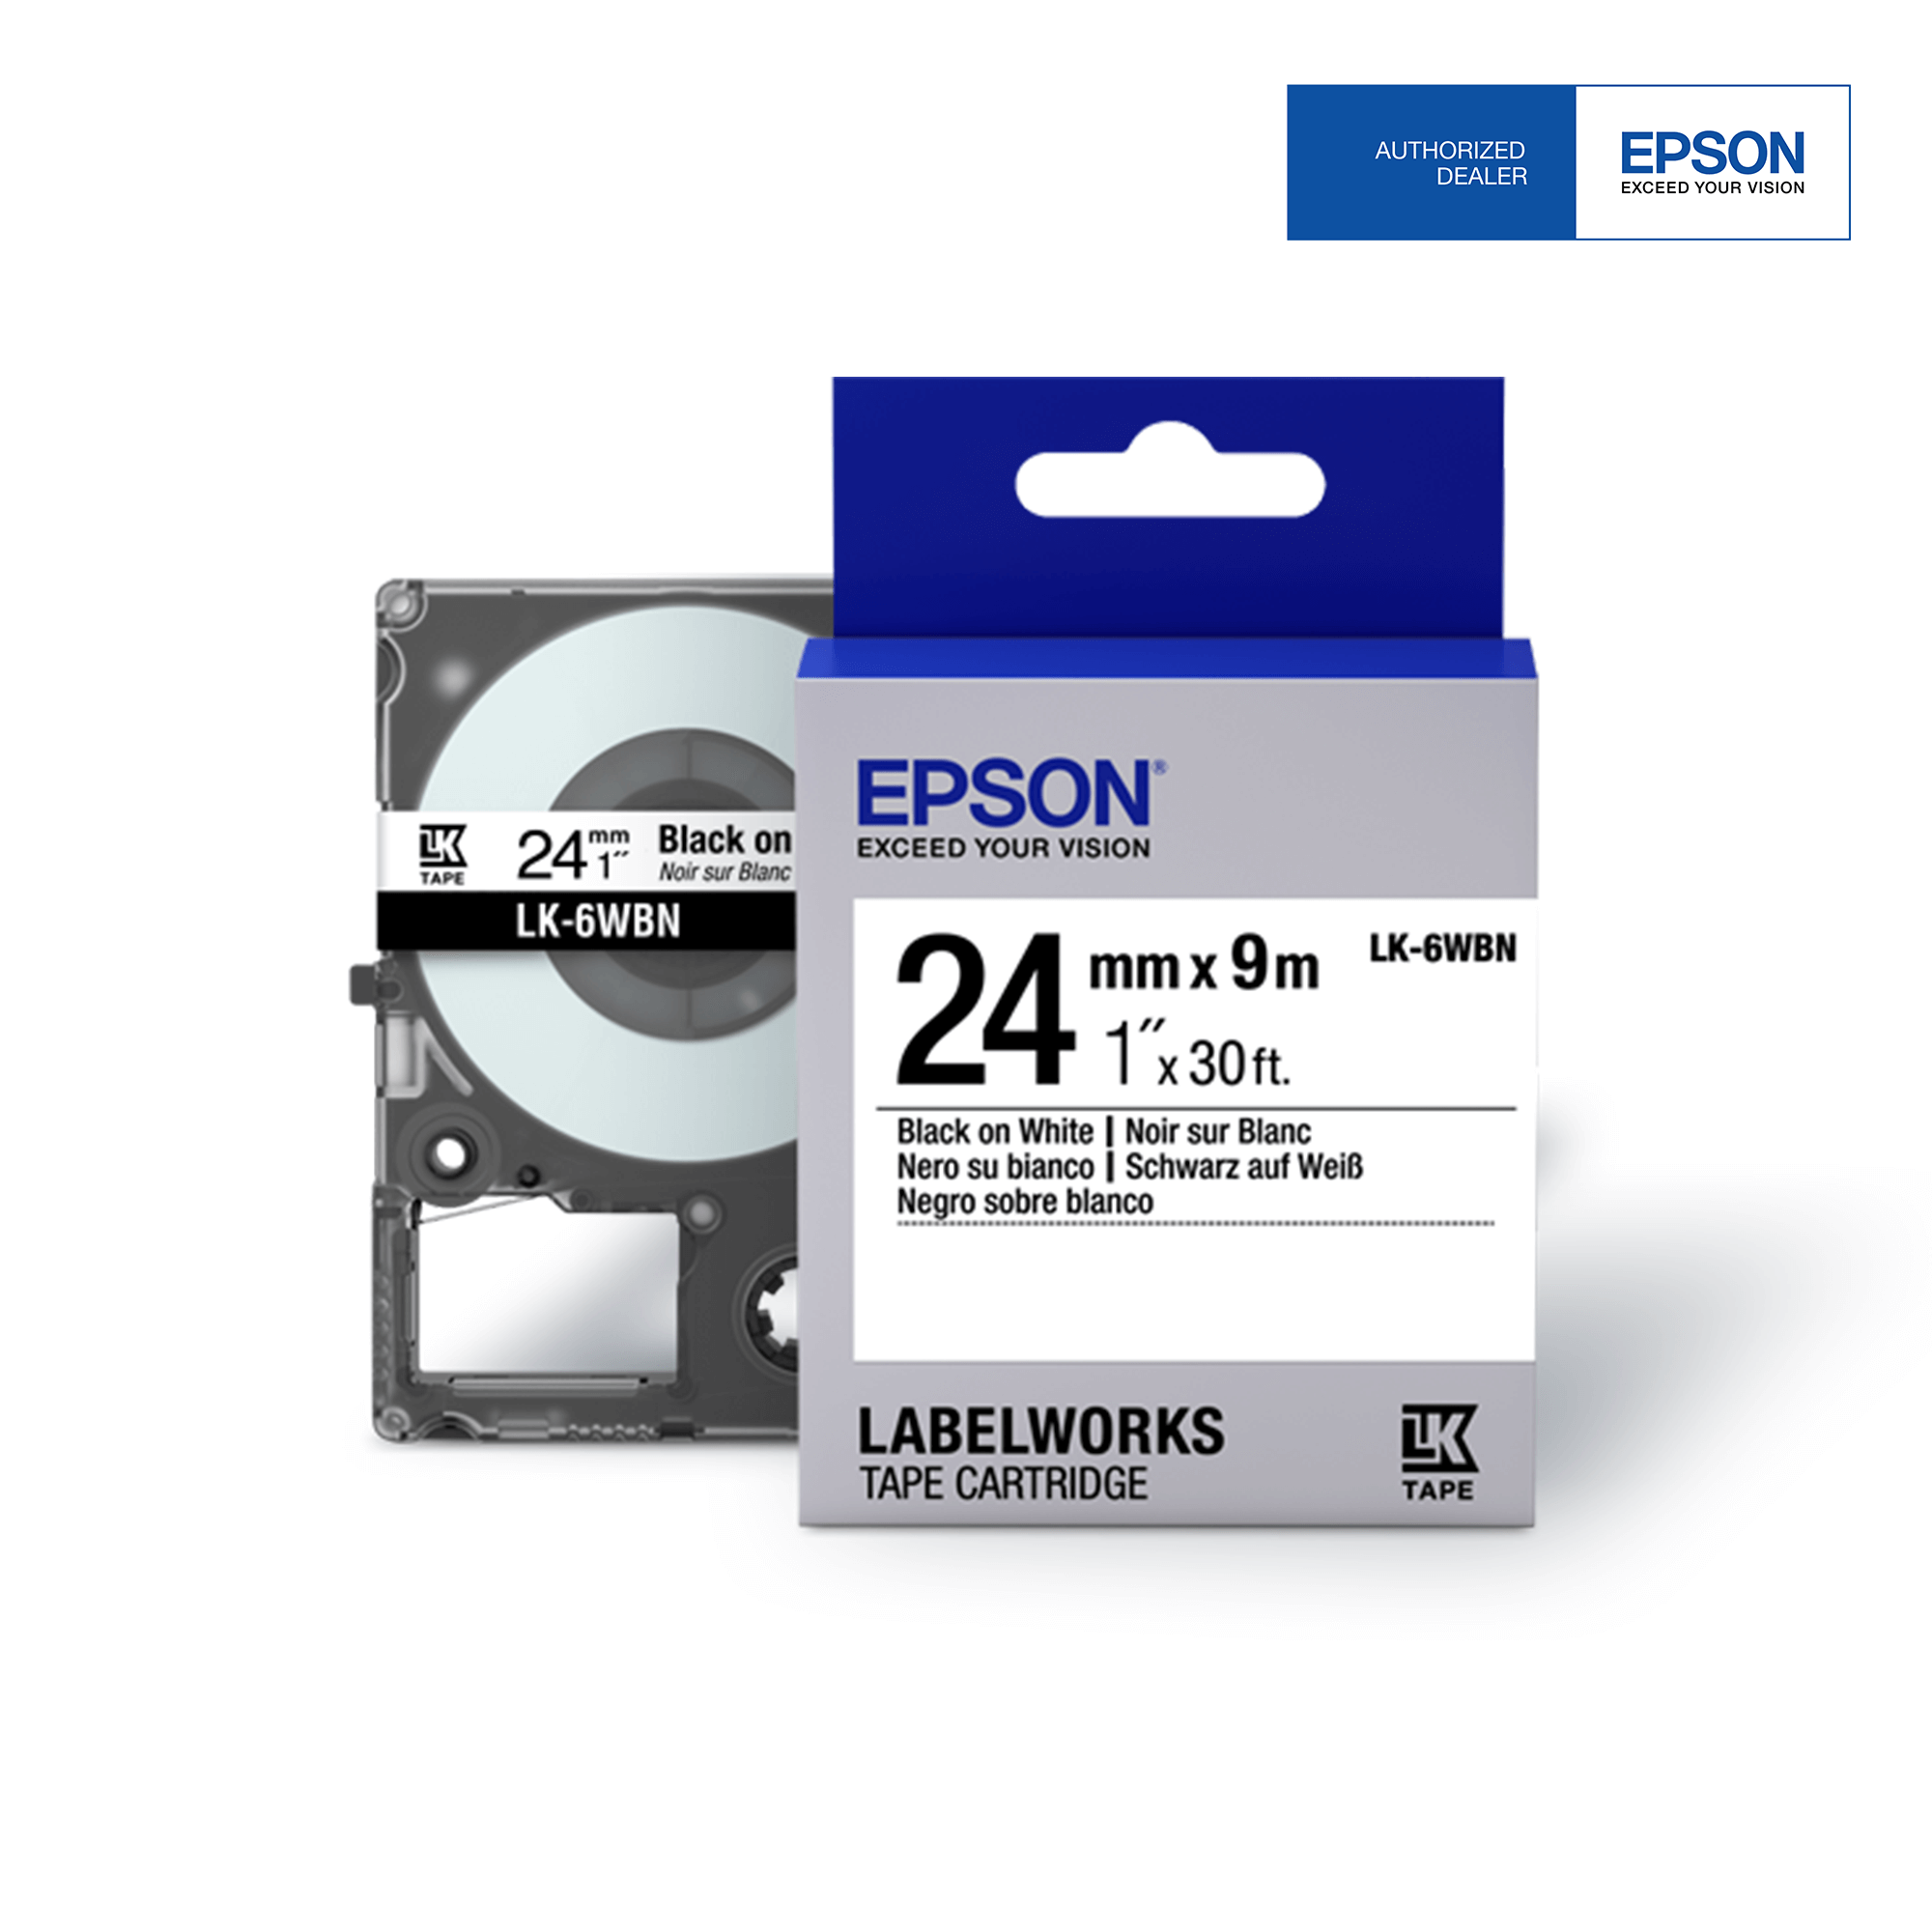 Epson labeler Tape 24mm Black on White refill